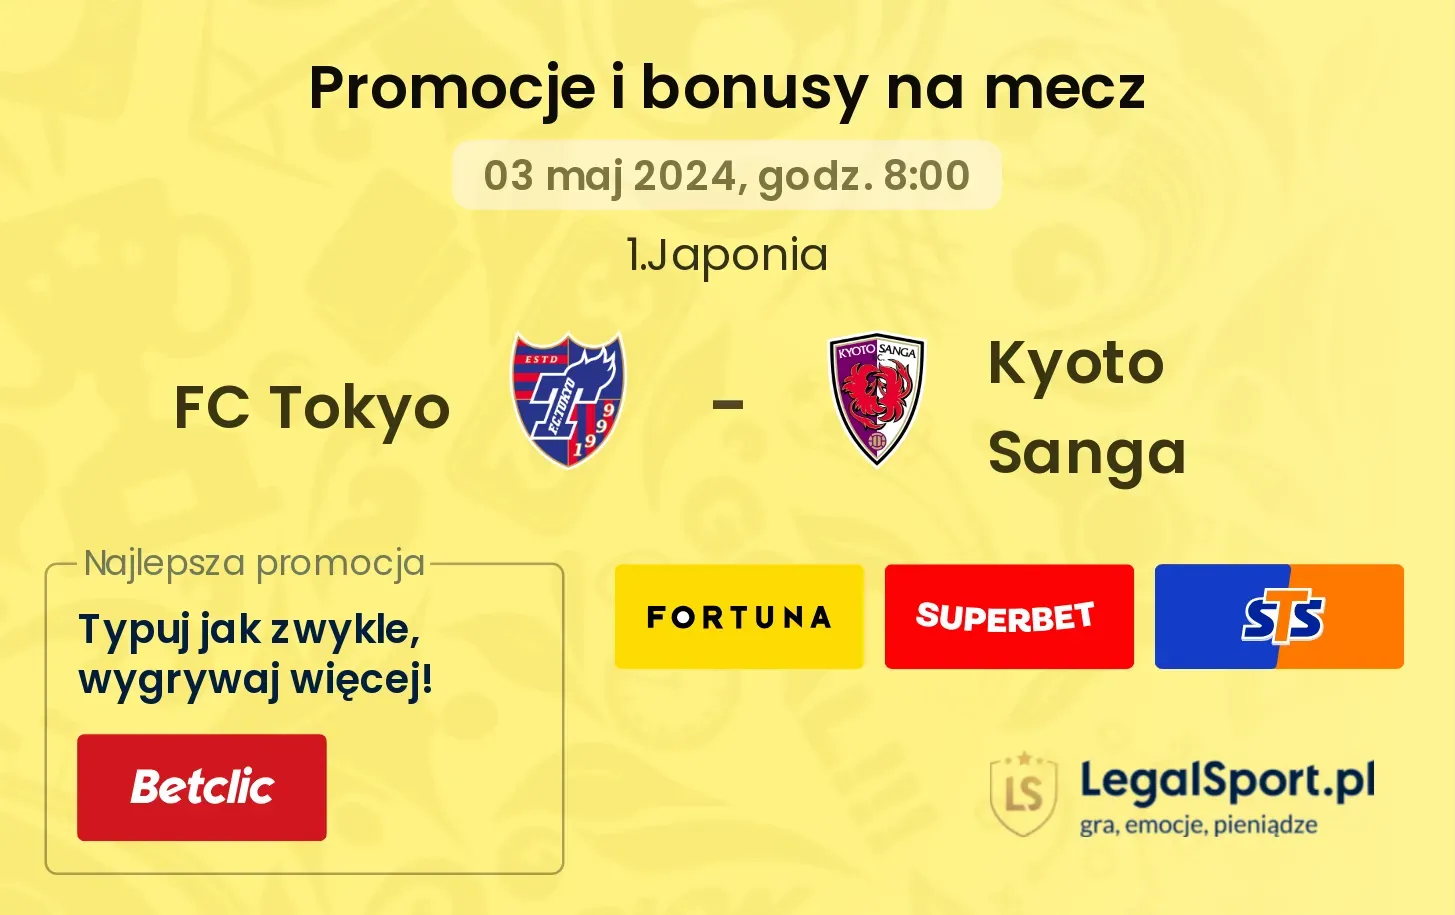 FC Tokyo - Kyoto Sanga promocje bonusy na mecz